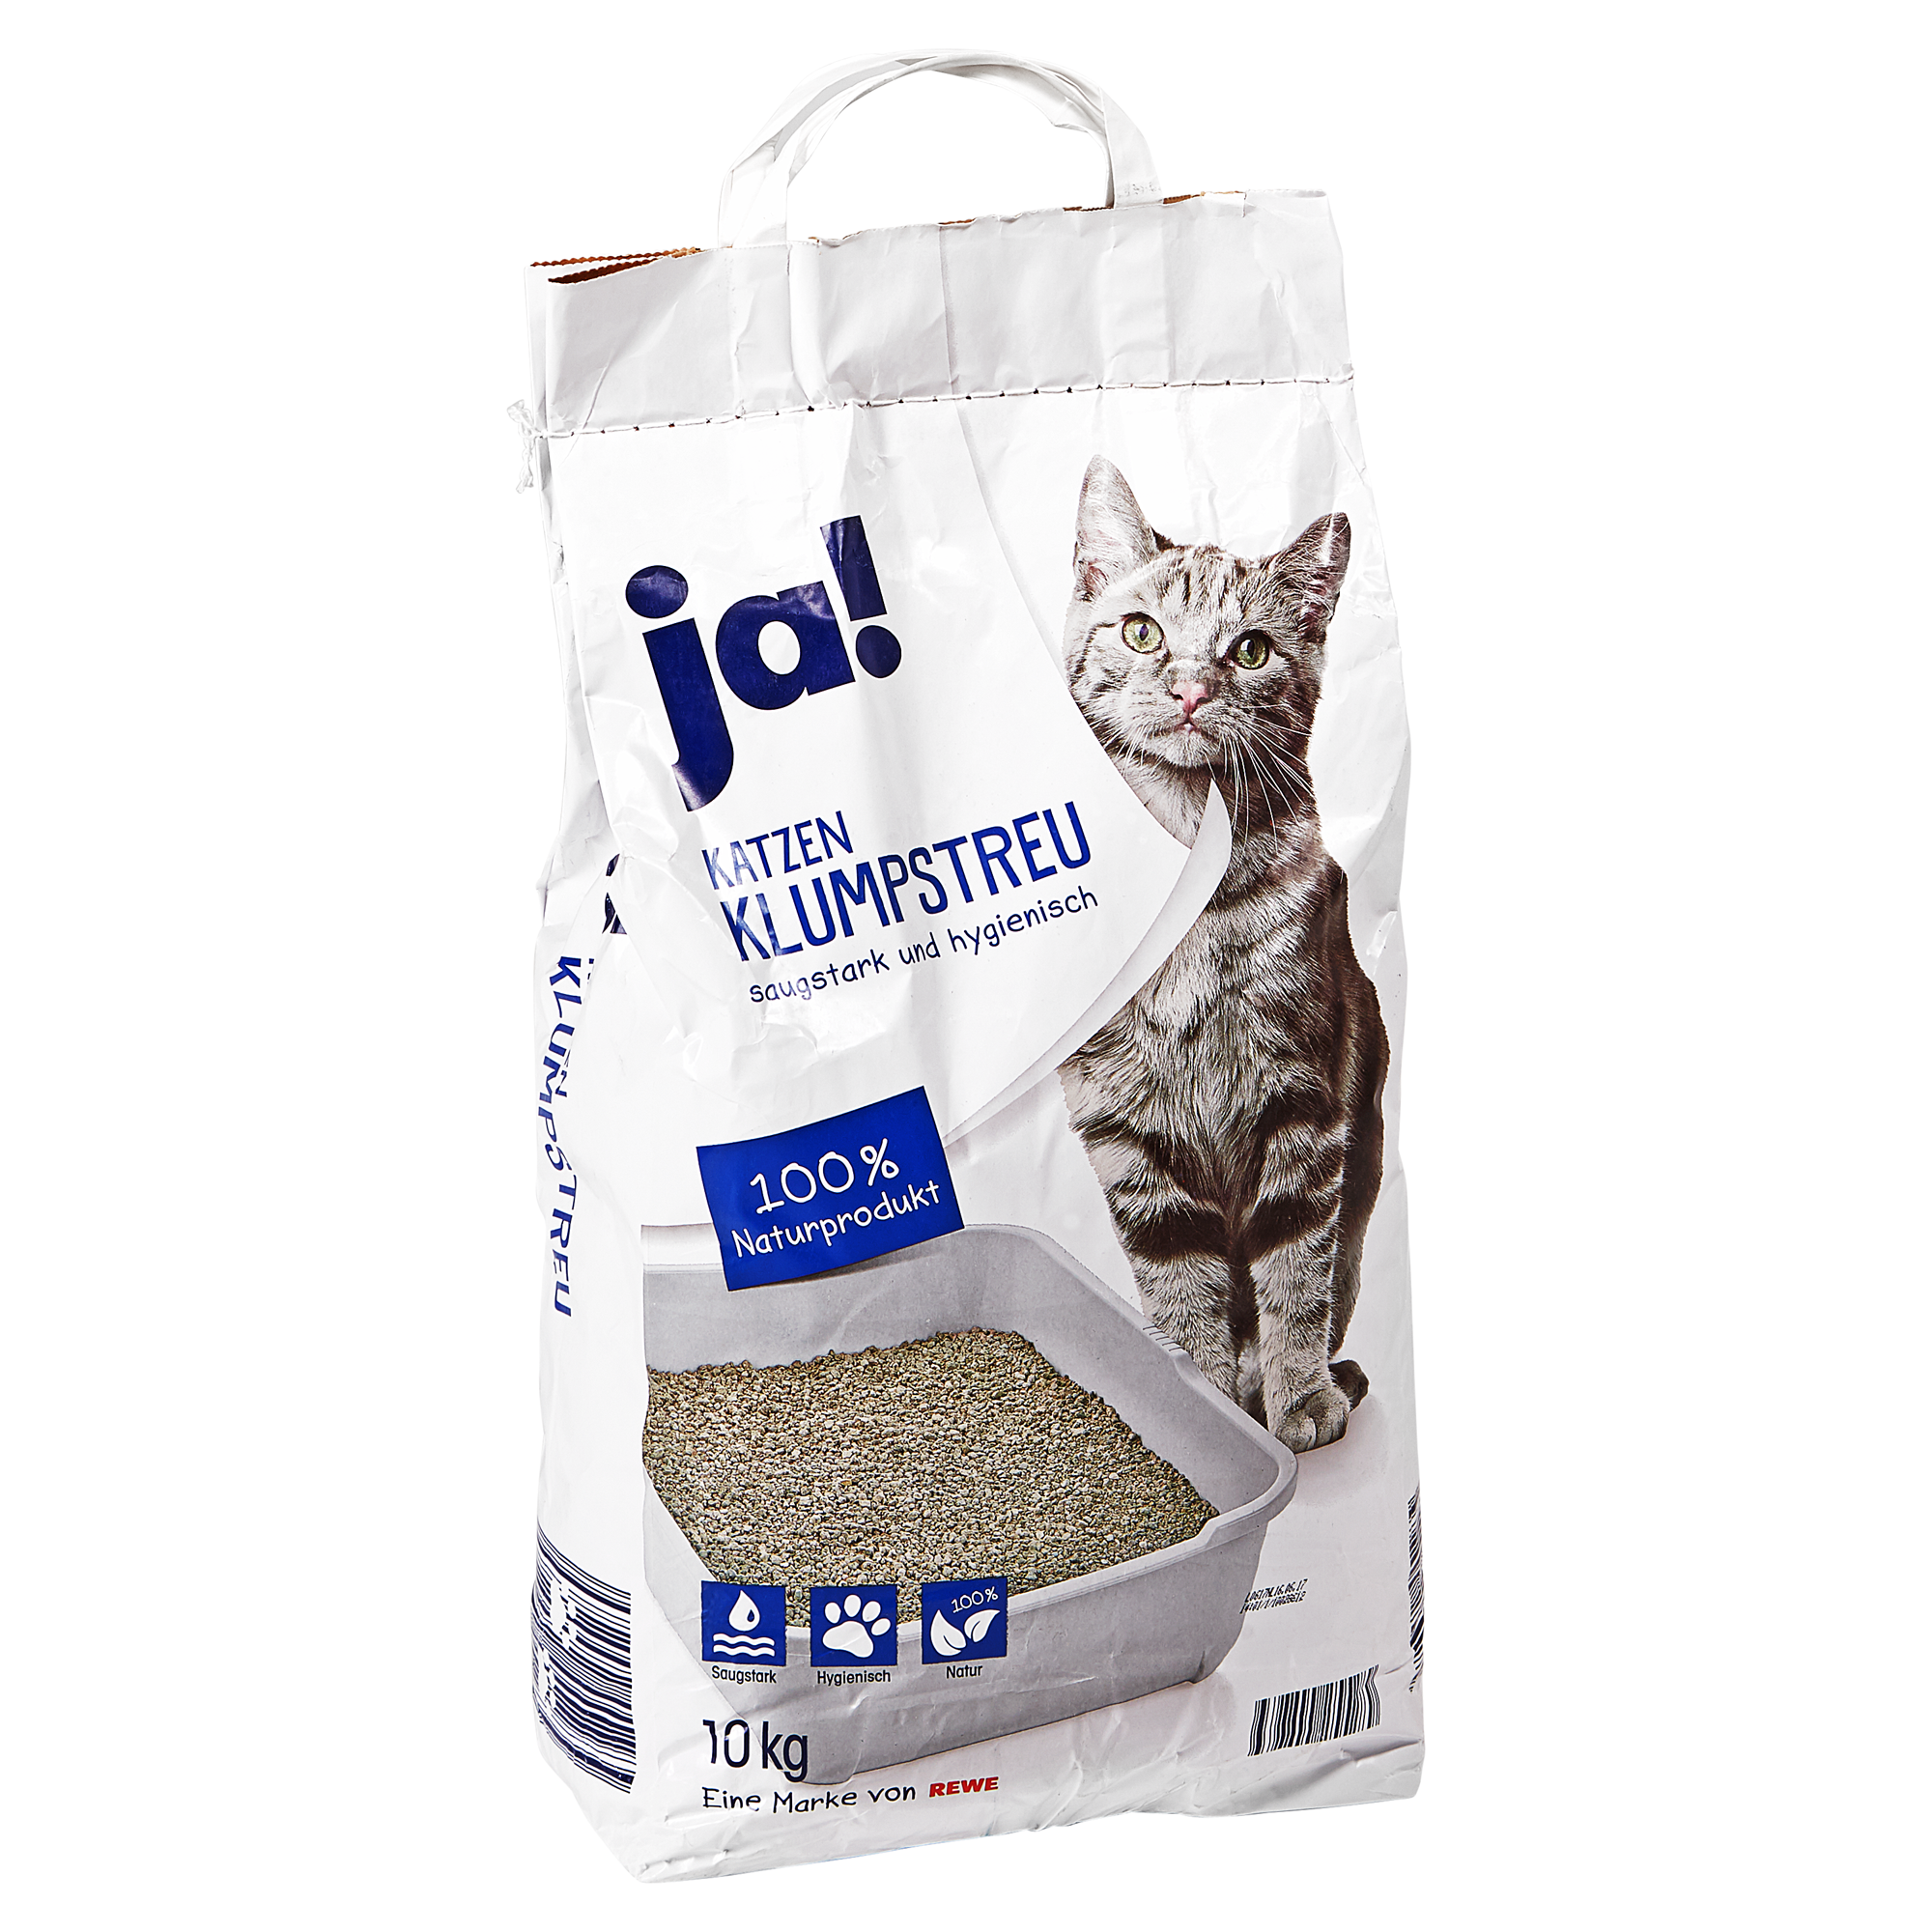 Klumpstreu für Katzen 10 kg + product picture